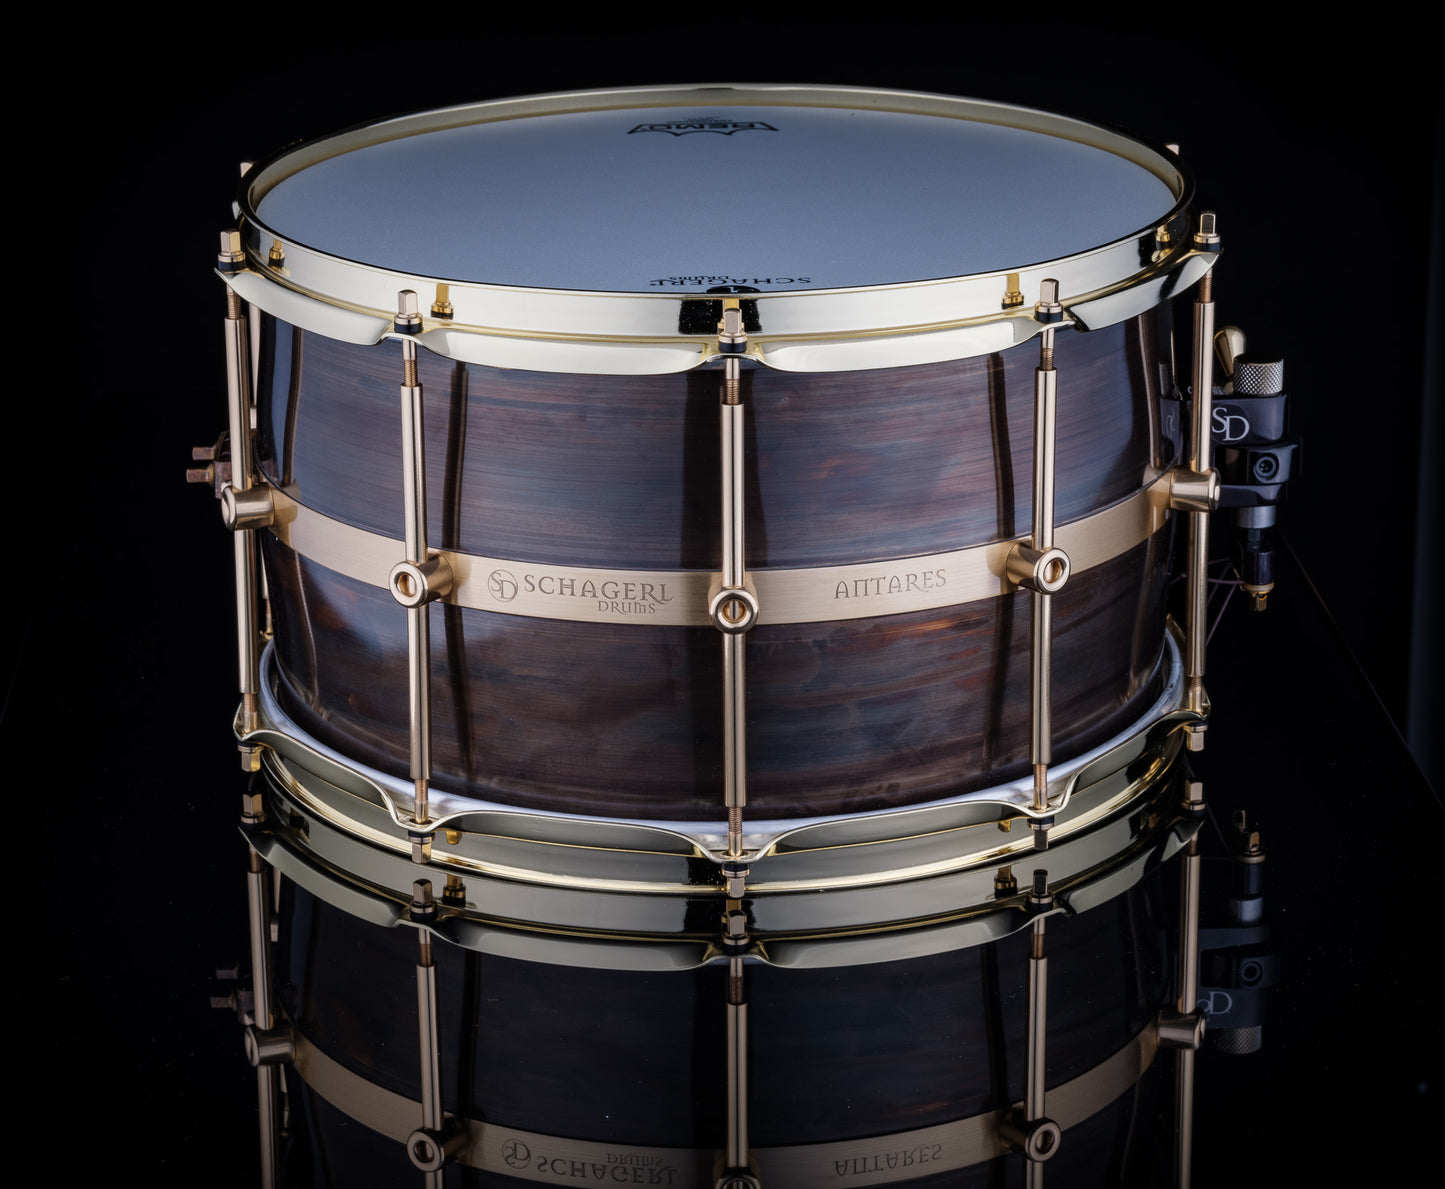 Schagerl Antares 14" x 6.5" Custom Dark Brass Snare Drum